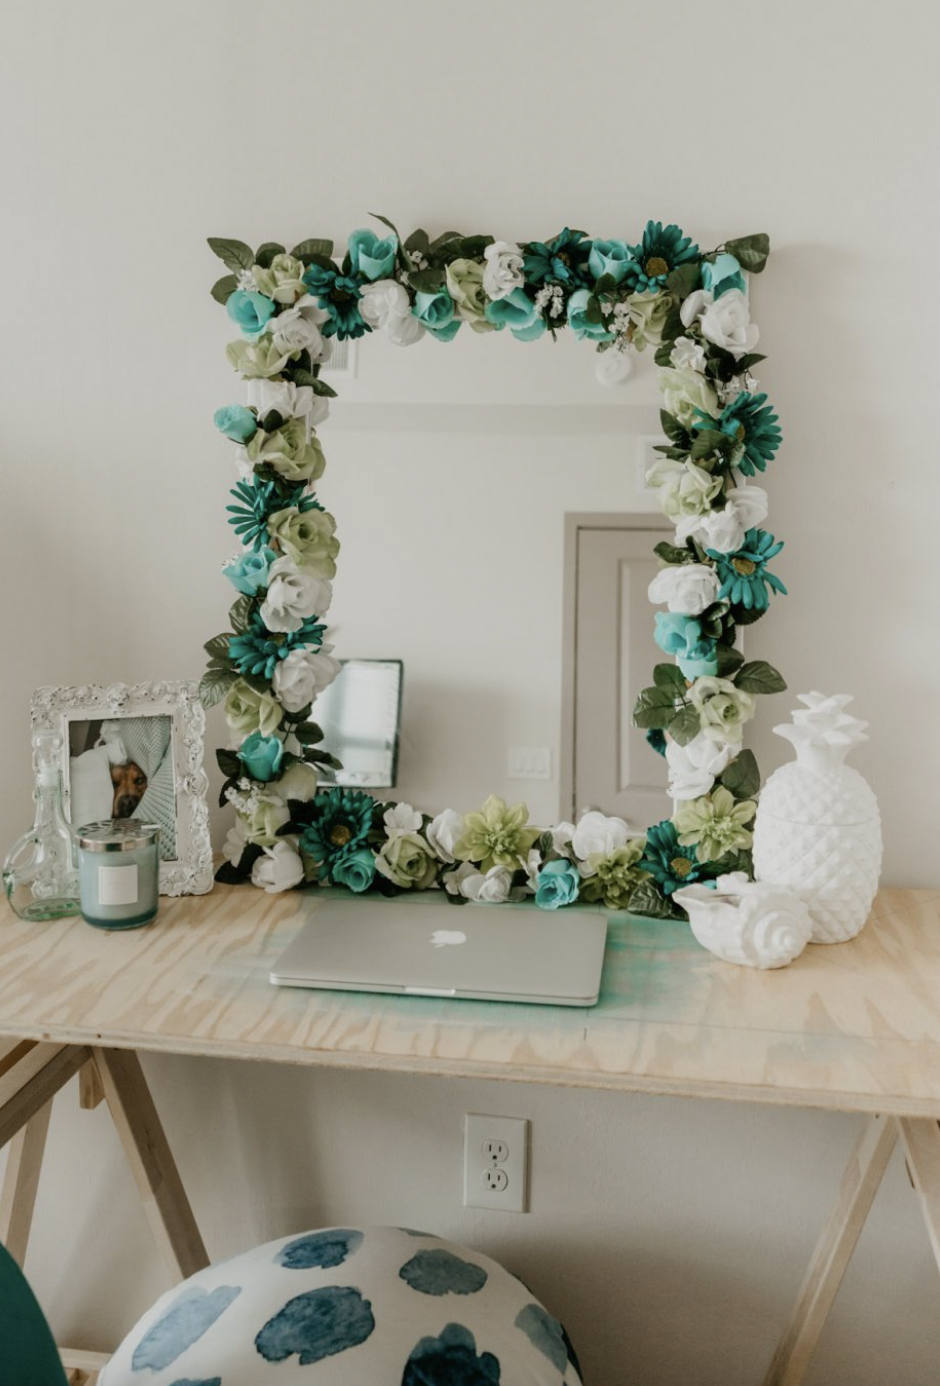 DIY Flower Vanity Mirrors Frame